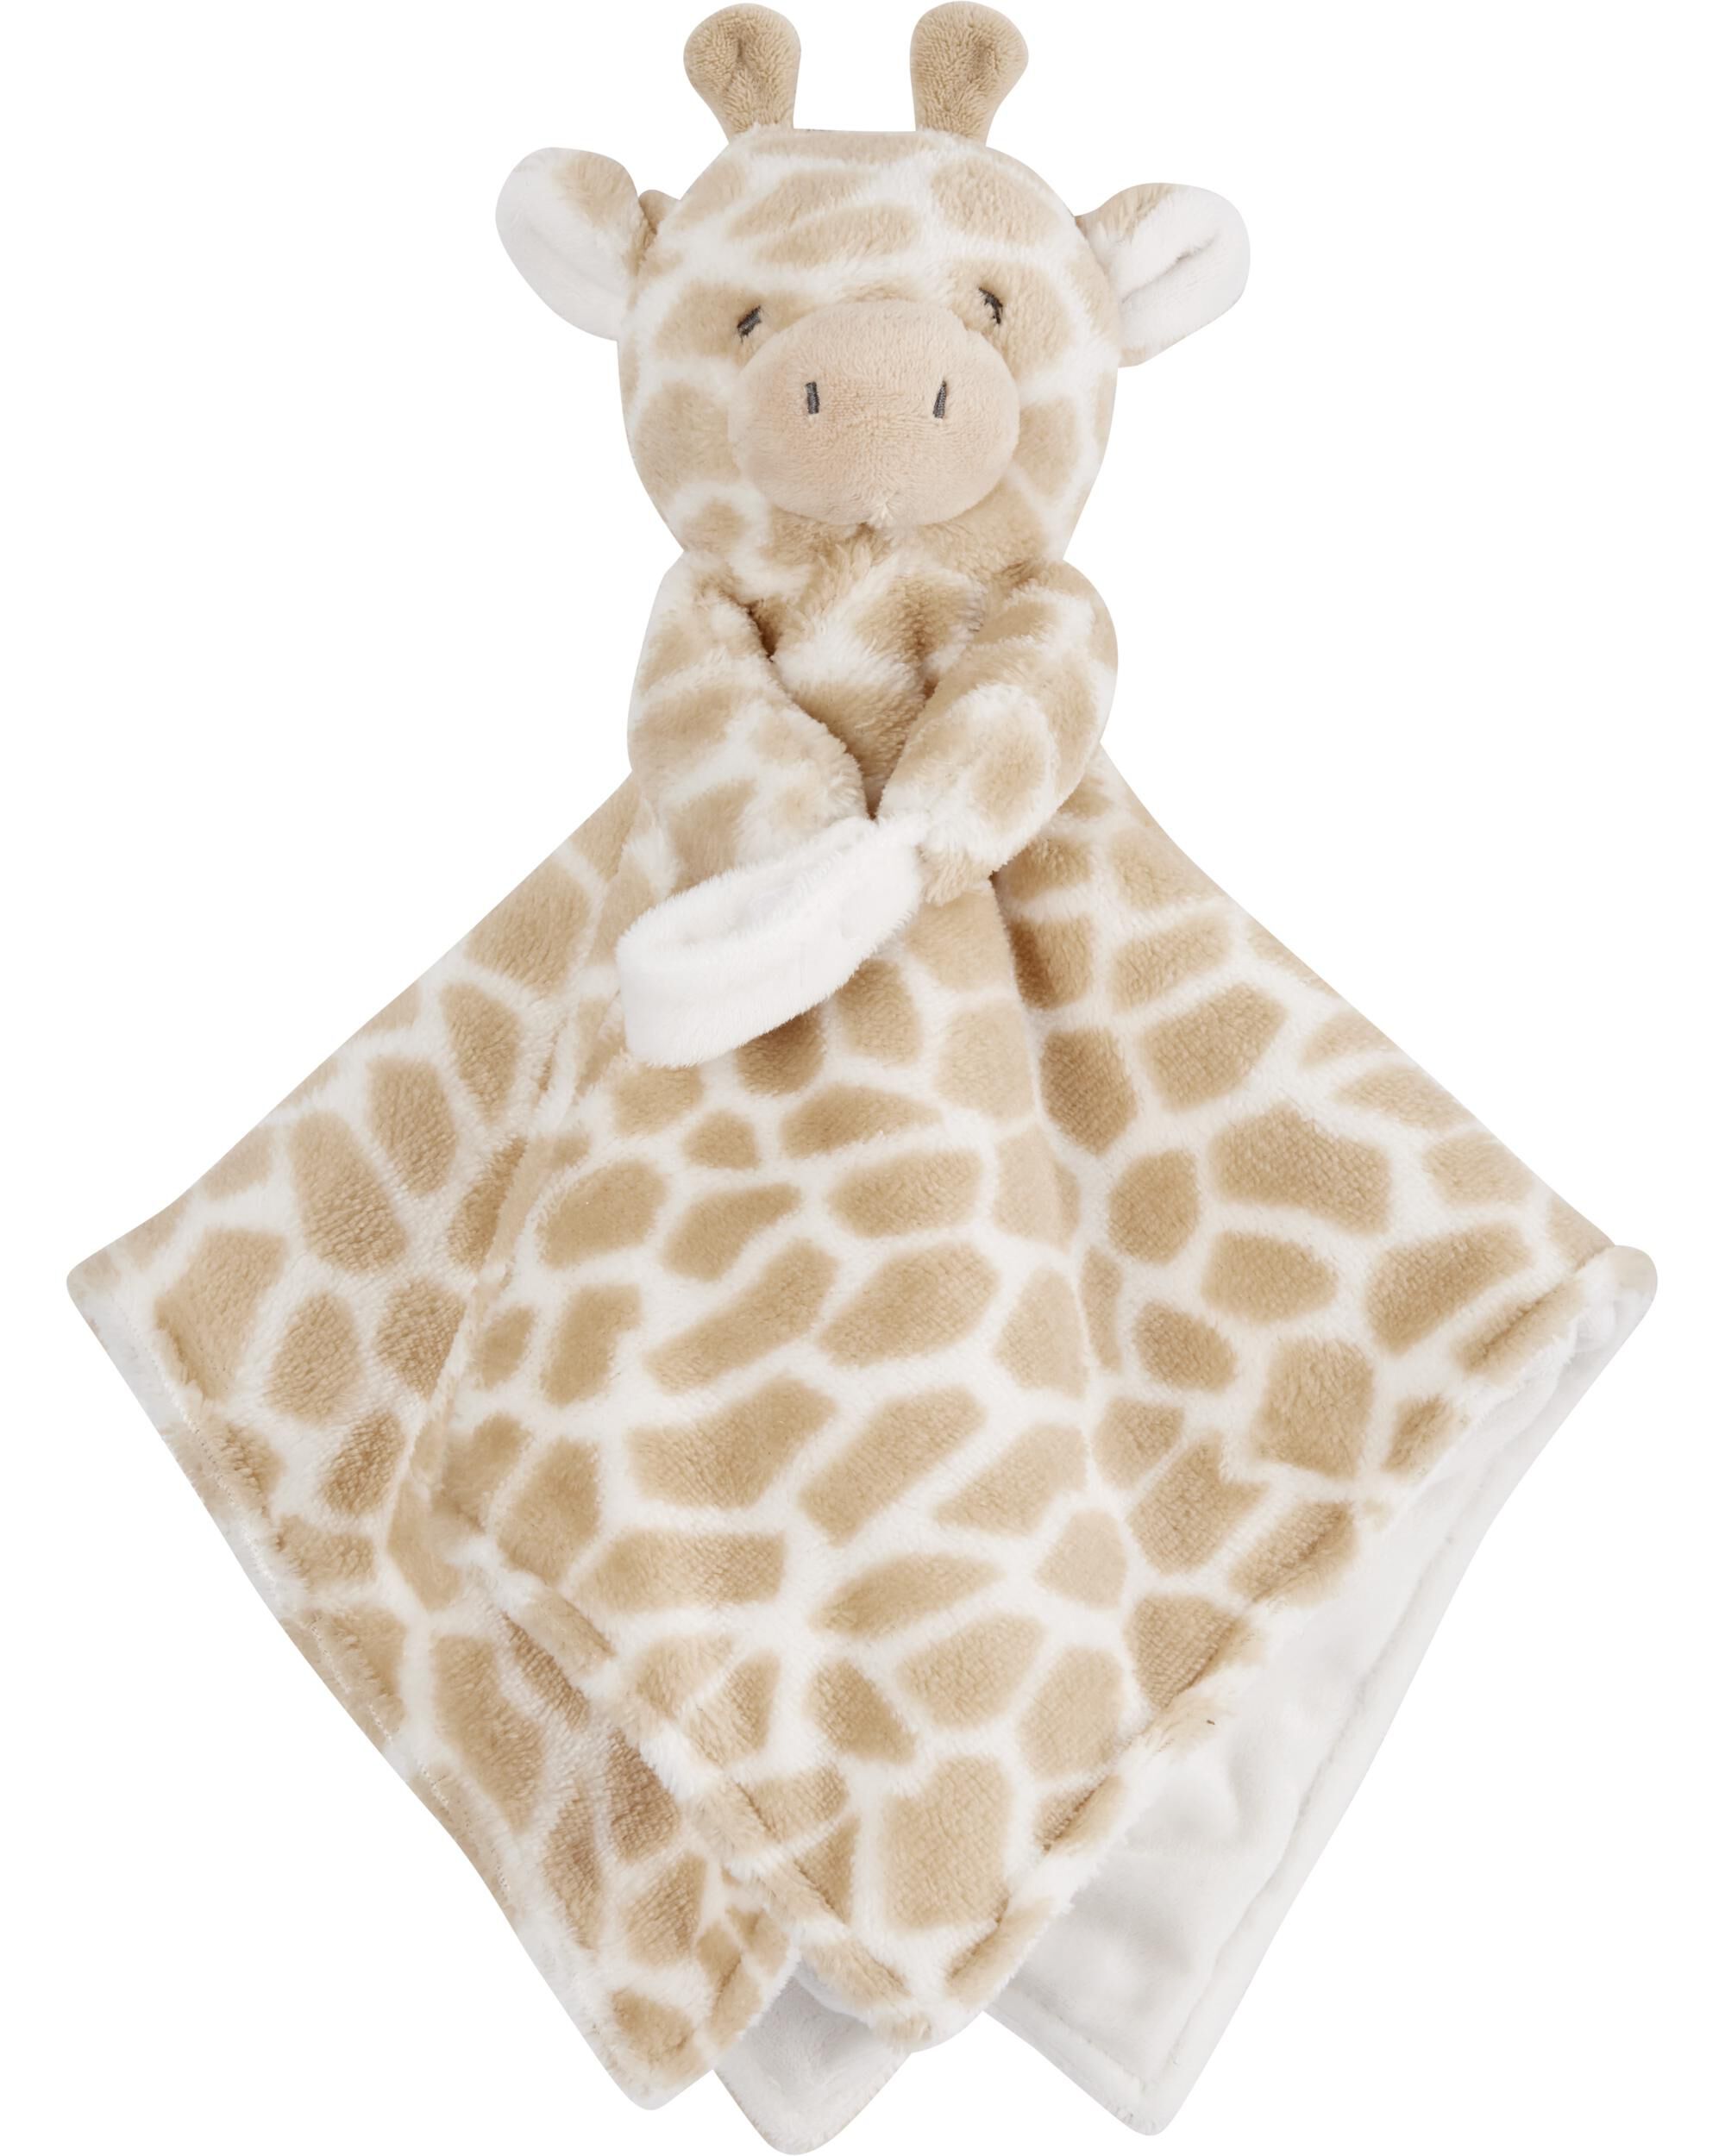 carter's giraffe plush